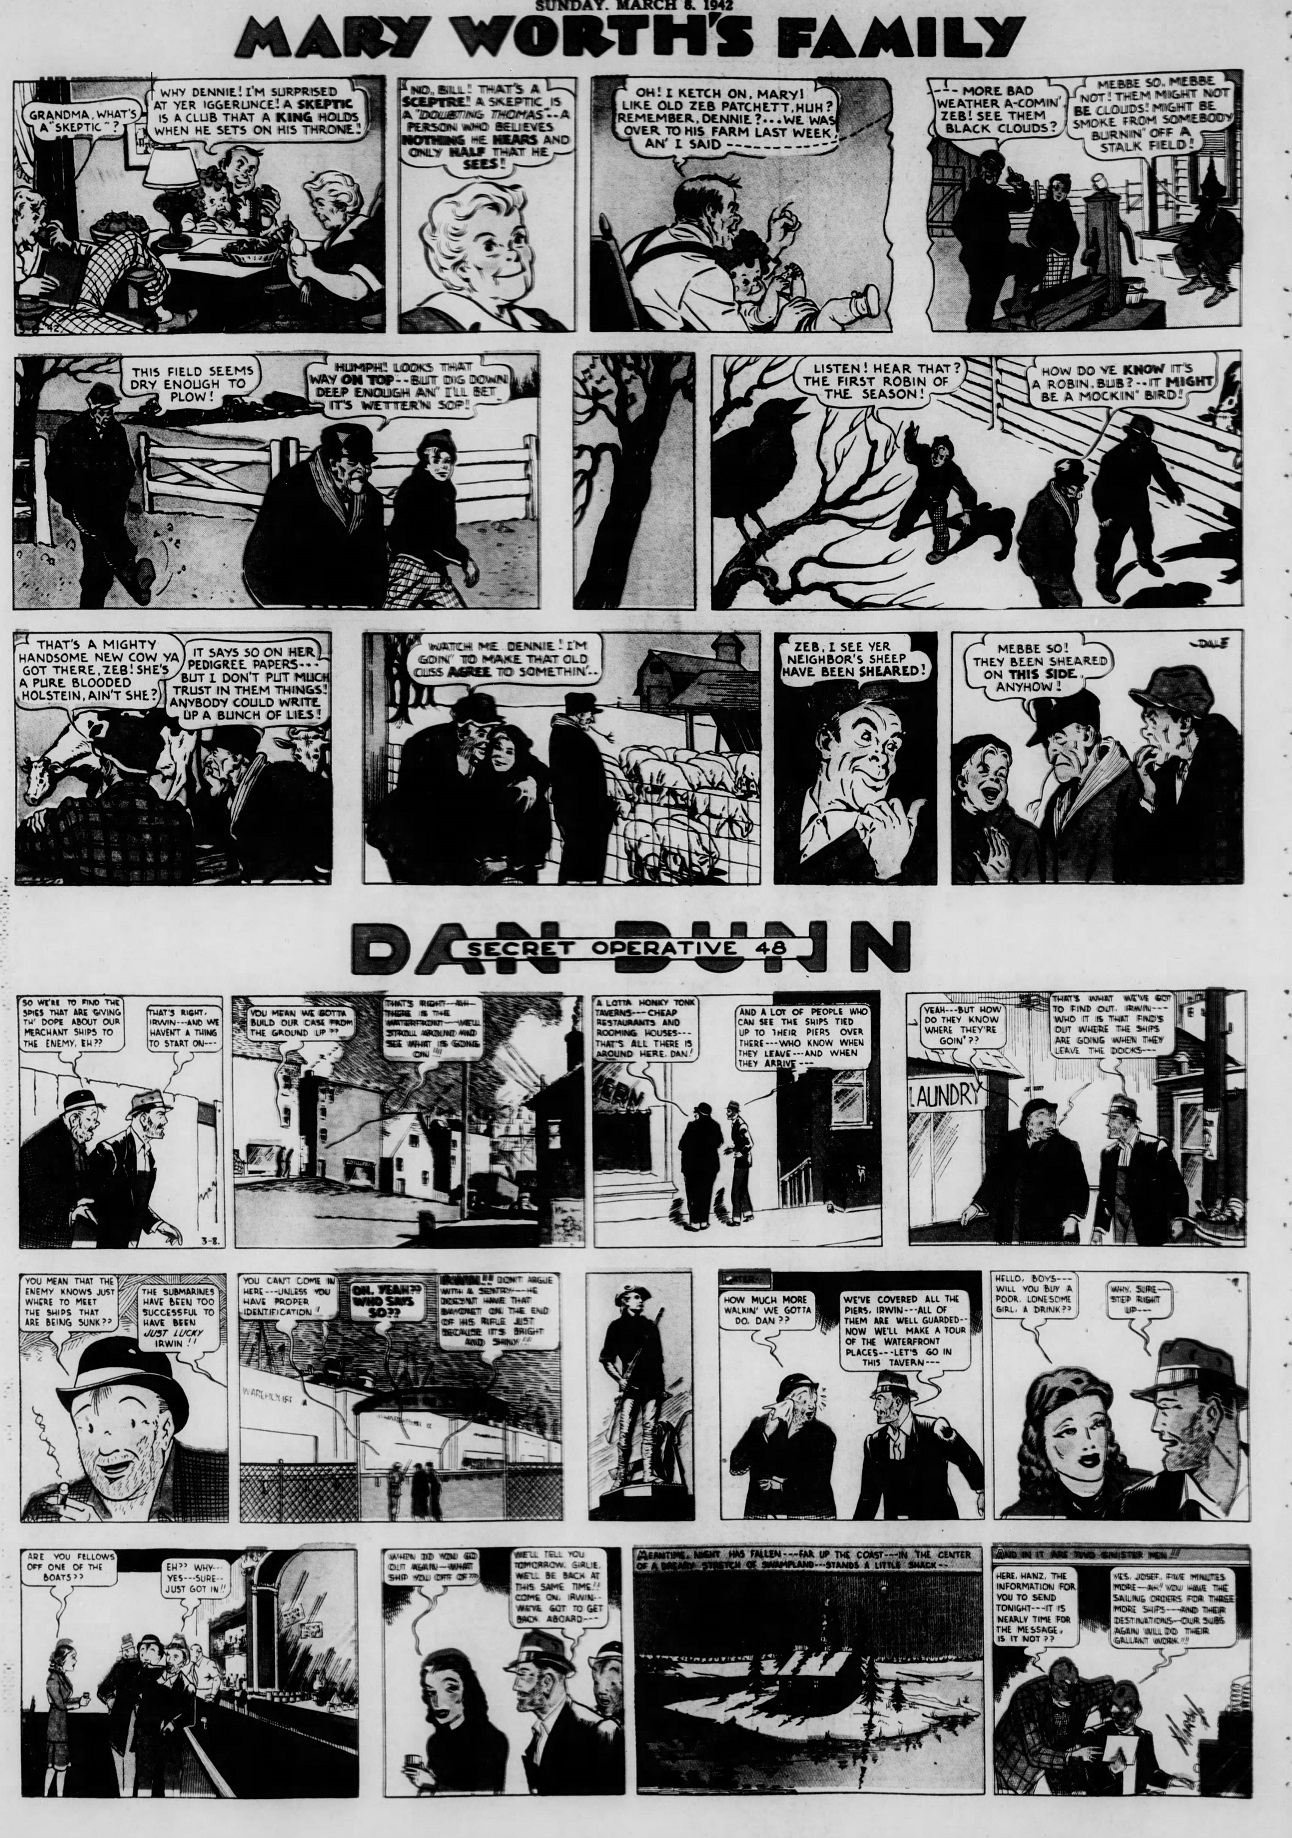 The_Brooklyn_Daily_Eagle_Sun__Mar_8__1942_ (7).jpg